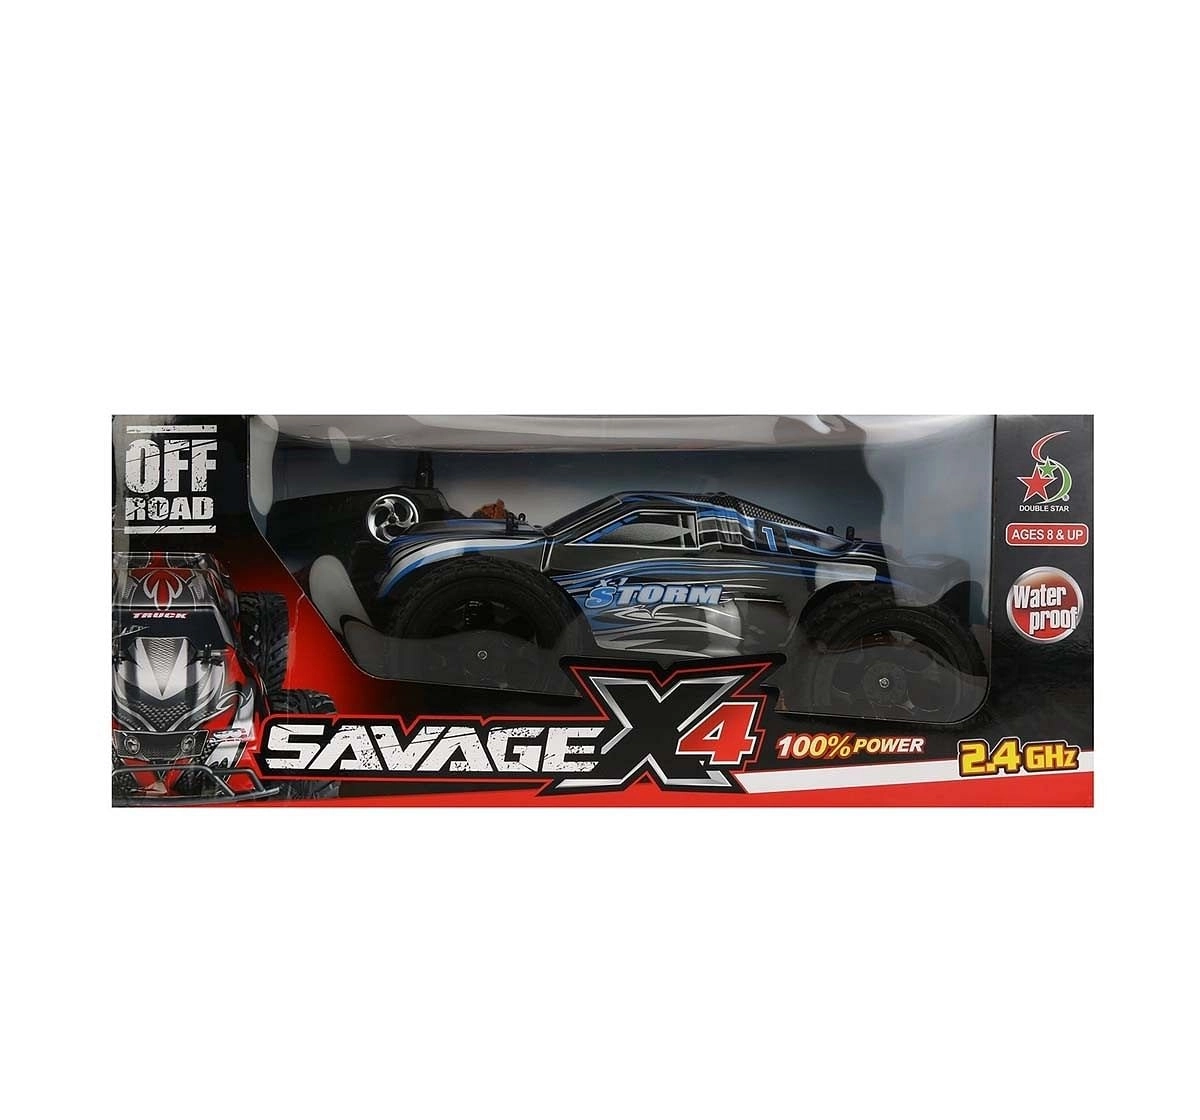 Rowan RW 1:10 4WD Savage X Off-Roader Remote Control Car Toys for Kids age 8Y+ 